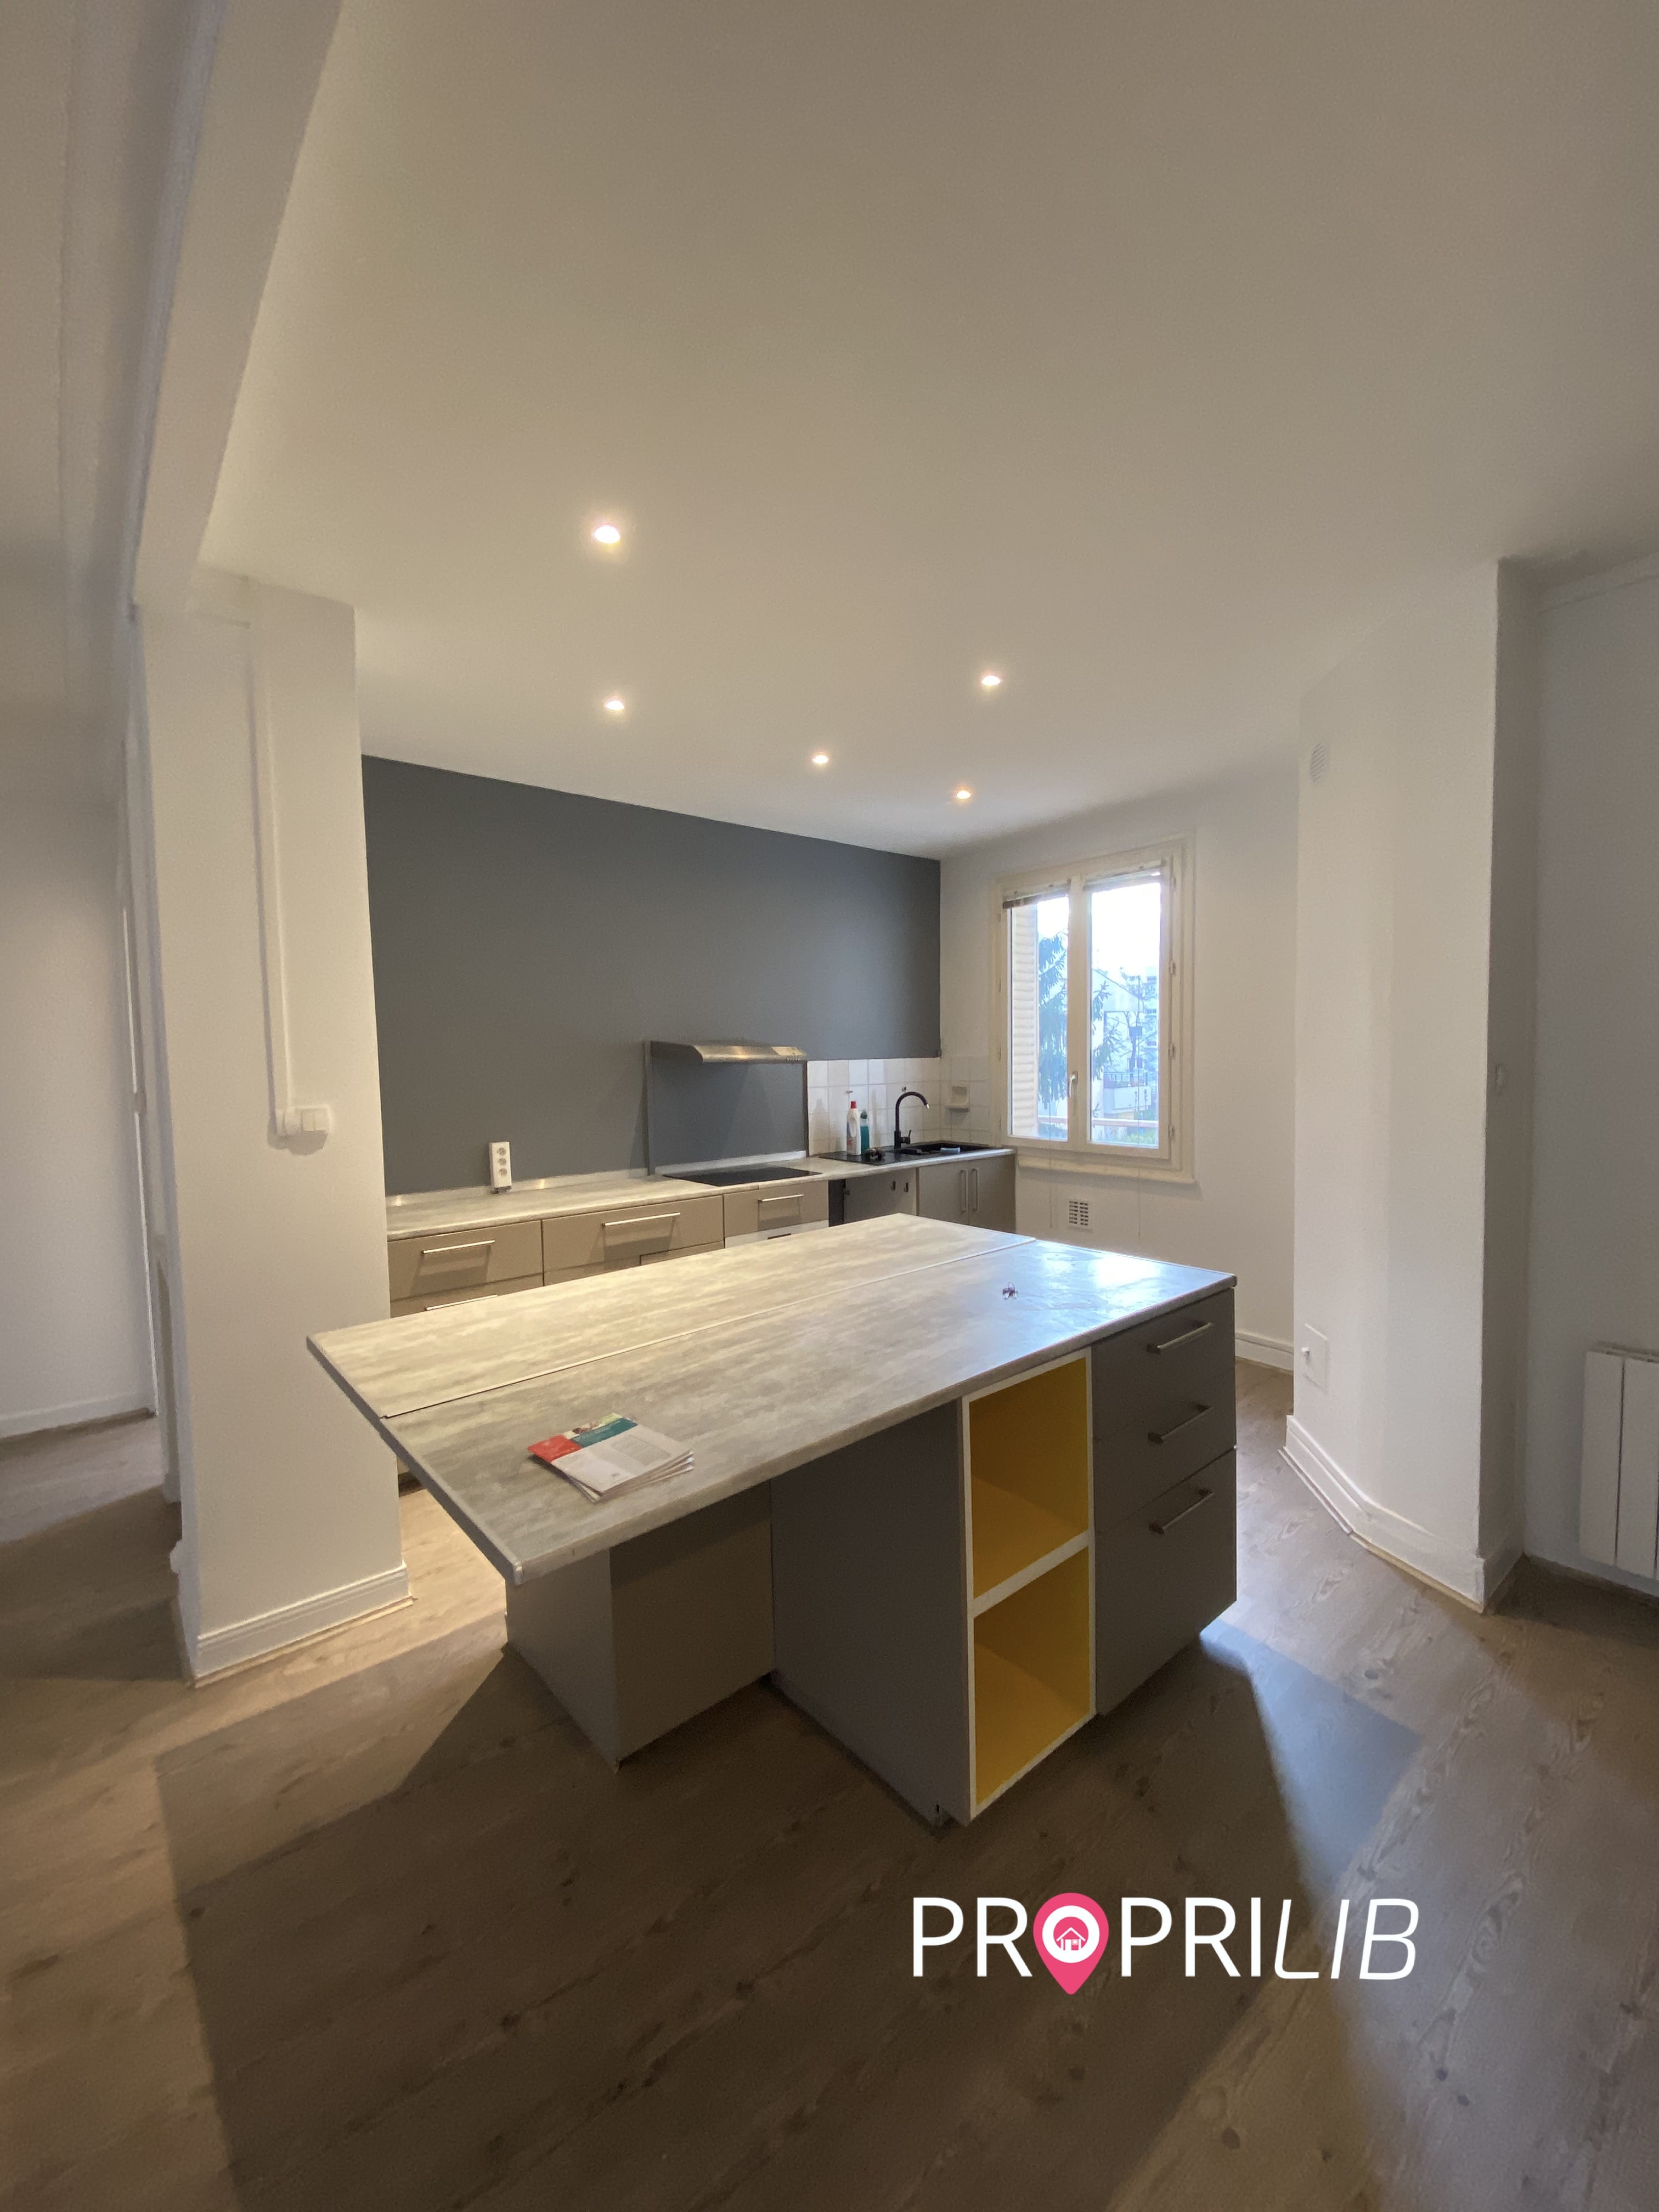 PropriLib l’agence immobilière en ligne à commission fixe vend cet appartement dans Lyon 3ème